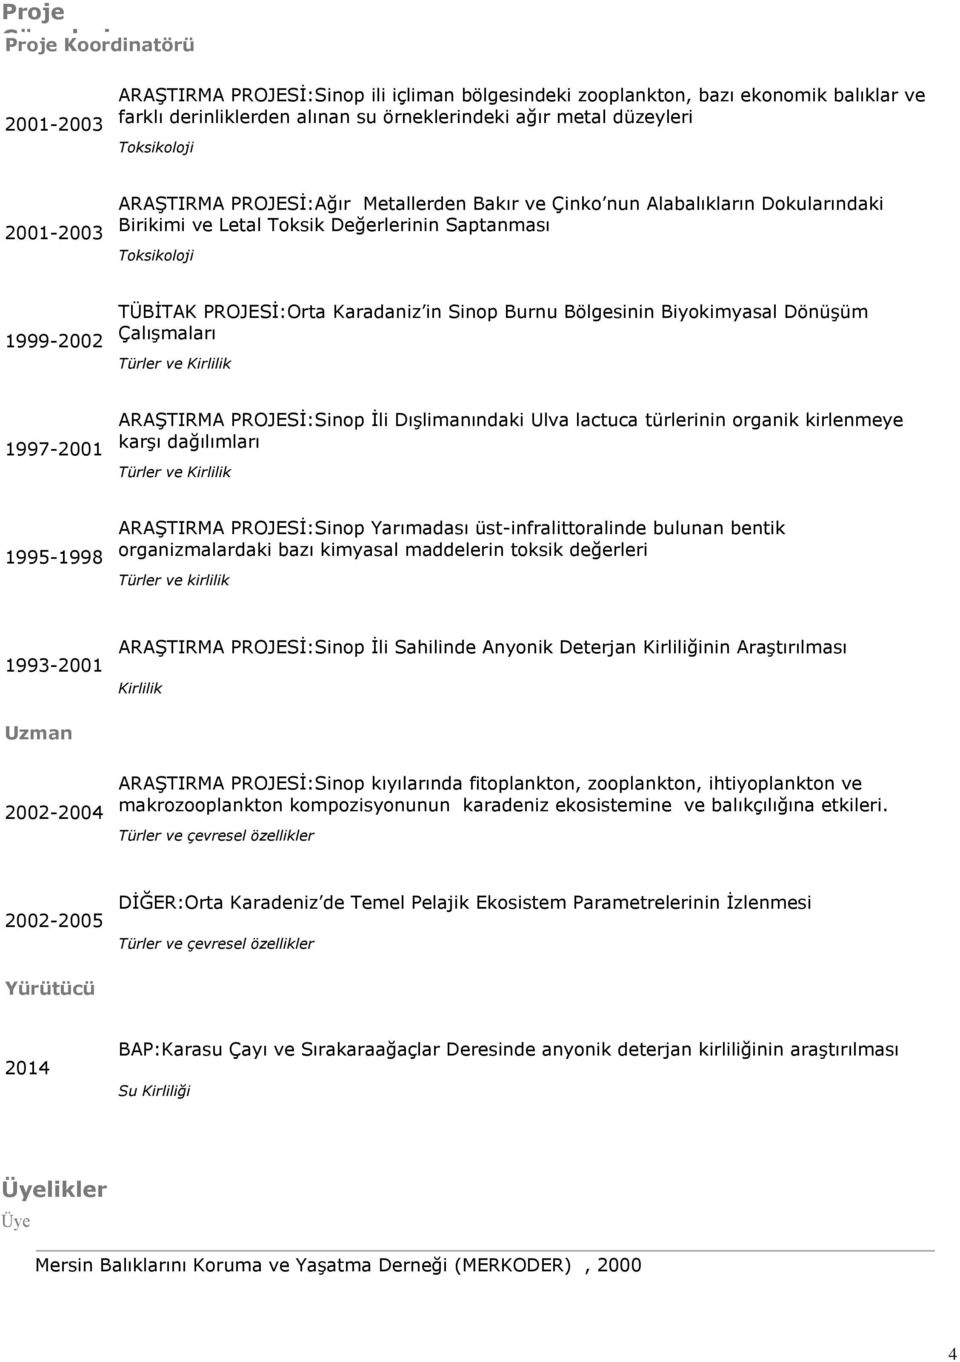 PROJESİ:Orta Karadaniz in Sinop Burnu Bölgesinin Biyokimyasal Dönüşüm Çalışmaları Türler ve Kirlilik 1997-2001 ARAŞTIRMA PROJESİ:Sinop İli Dışlimanındaki Ulva lactuca türlerinin organik kirlenmeye